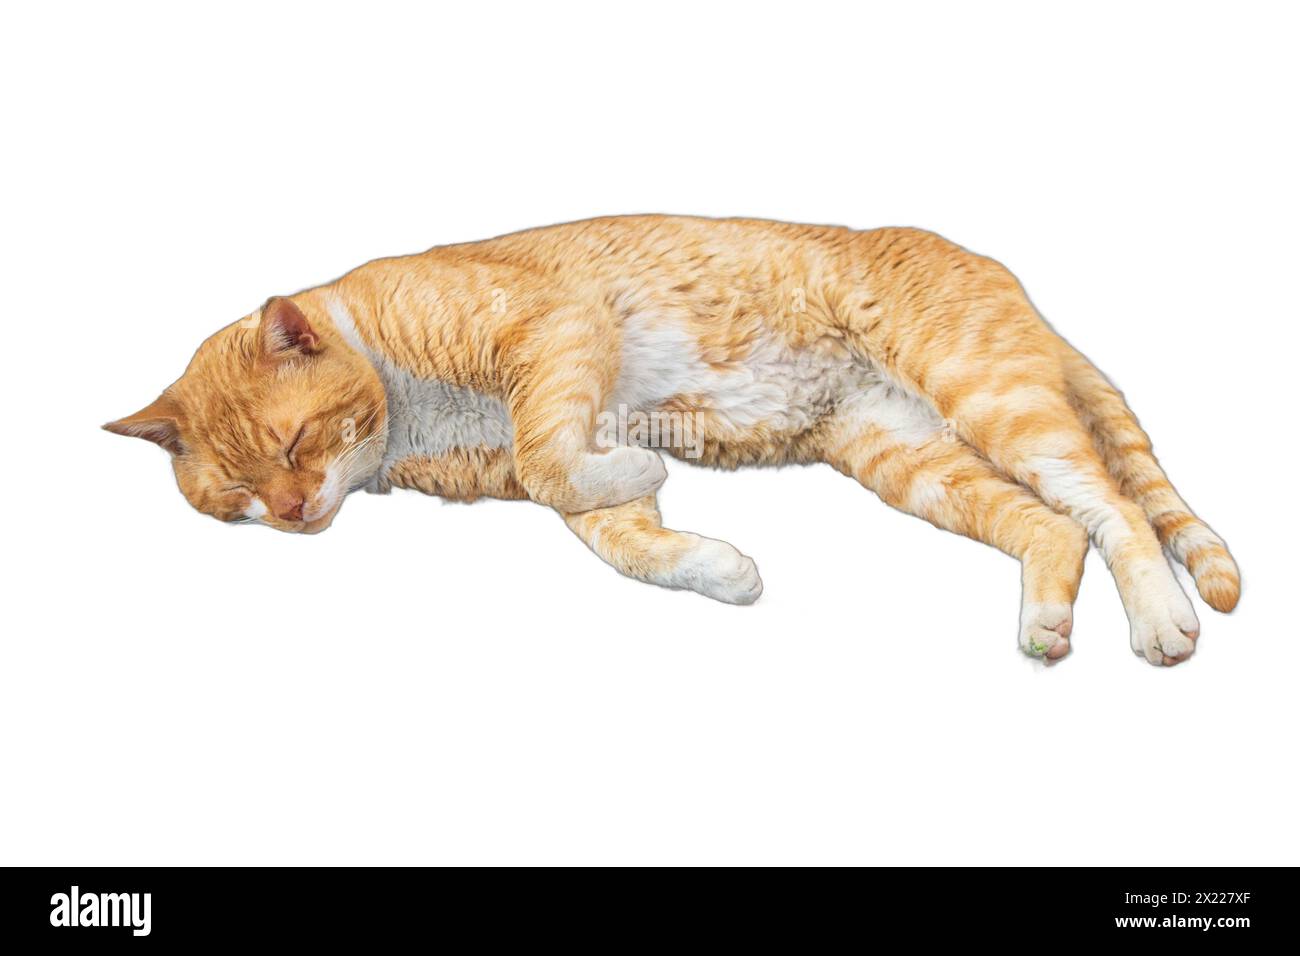 Isolierte Bilder heiterer Katzen, die in verschiedenen Posen liegen. Perfekt für Tiermotive, Illustrationen für Tierliebhaber und gemütliche Grafiken. Stockfoto